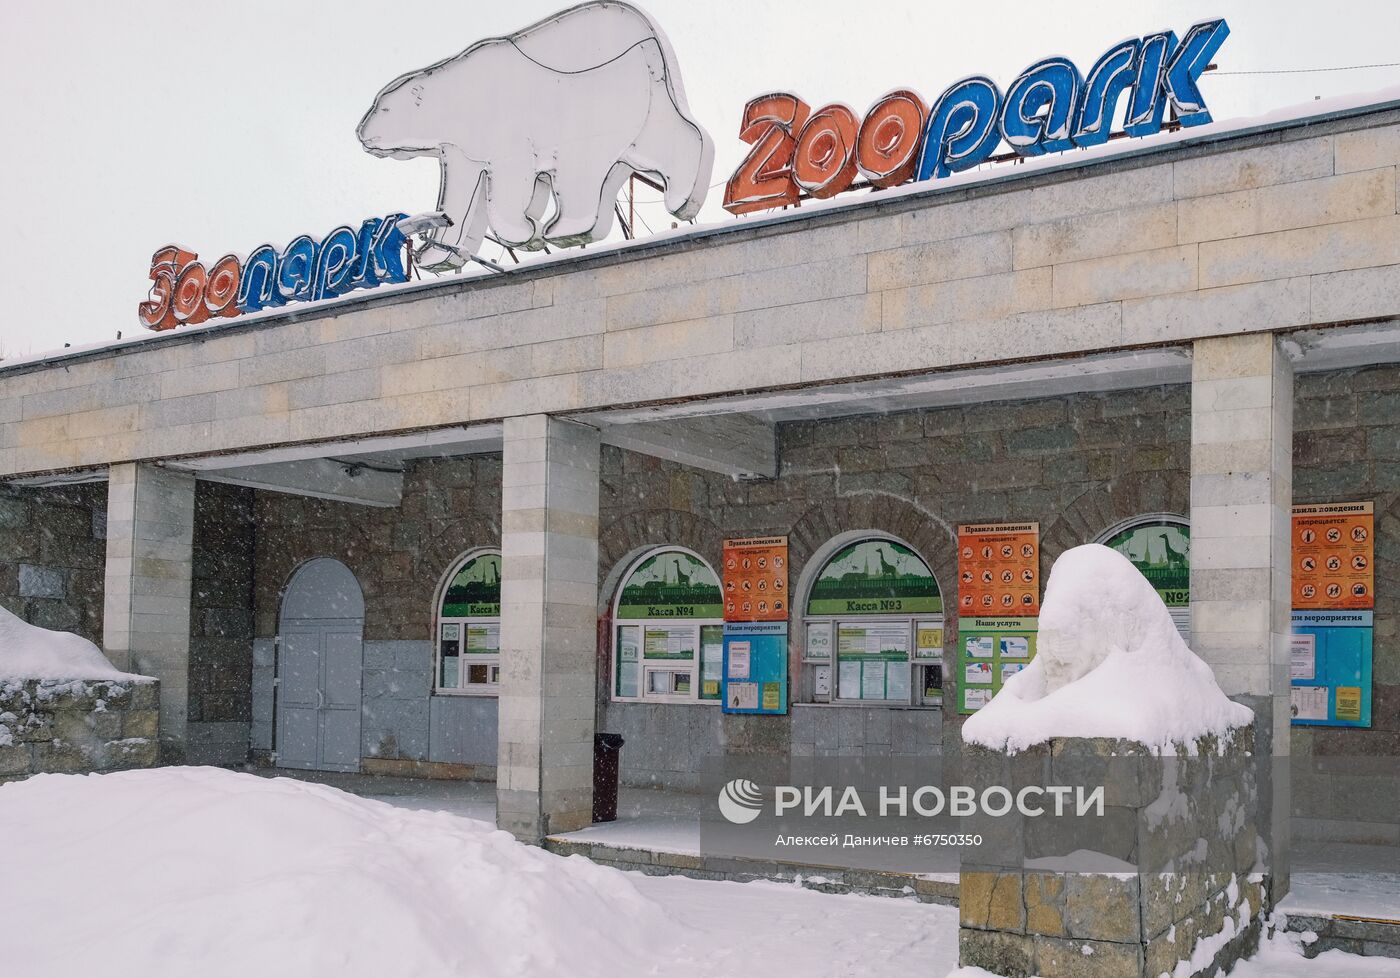 Опустевший из-за новых ковид-ограничений зоопарк Санкт-Петербурга